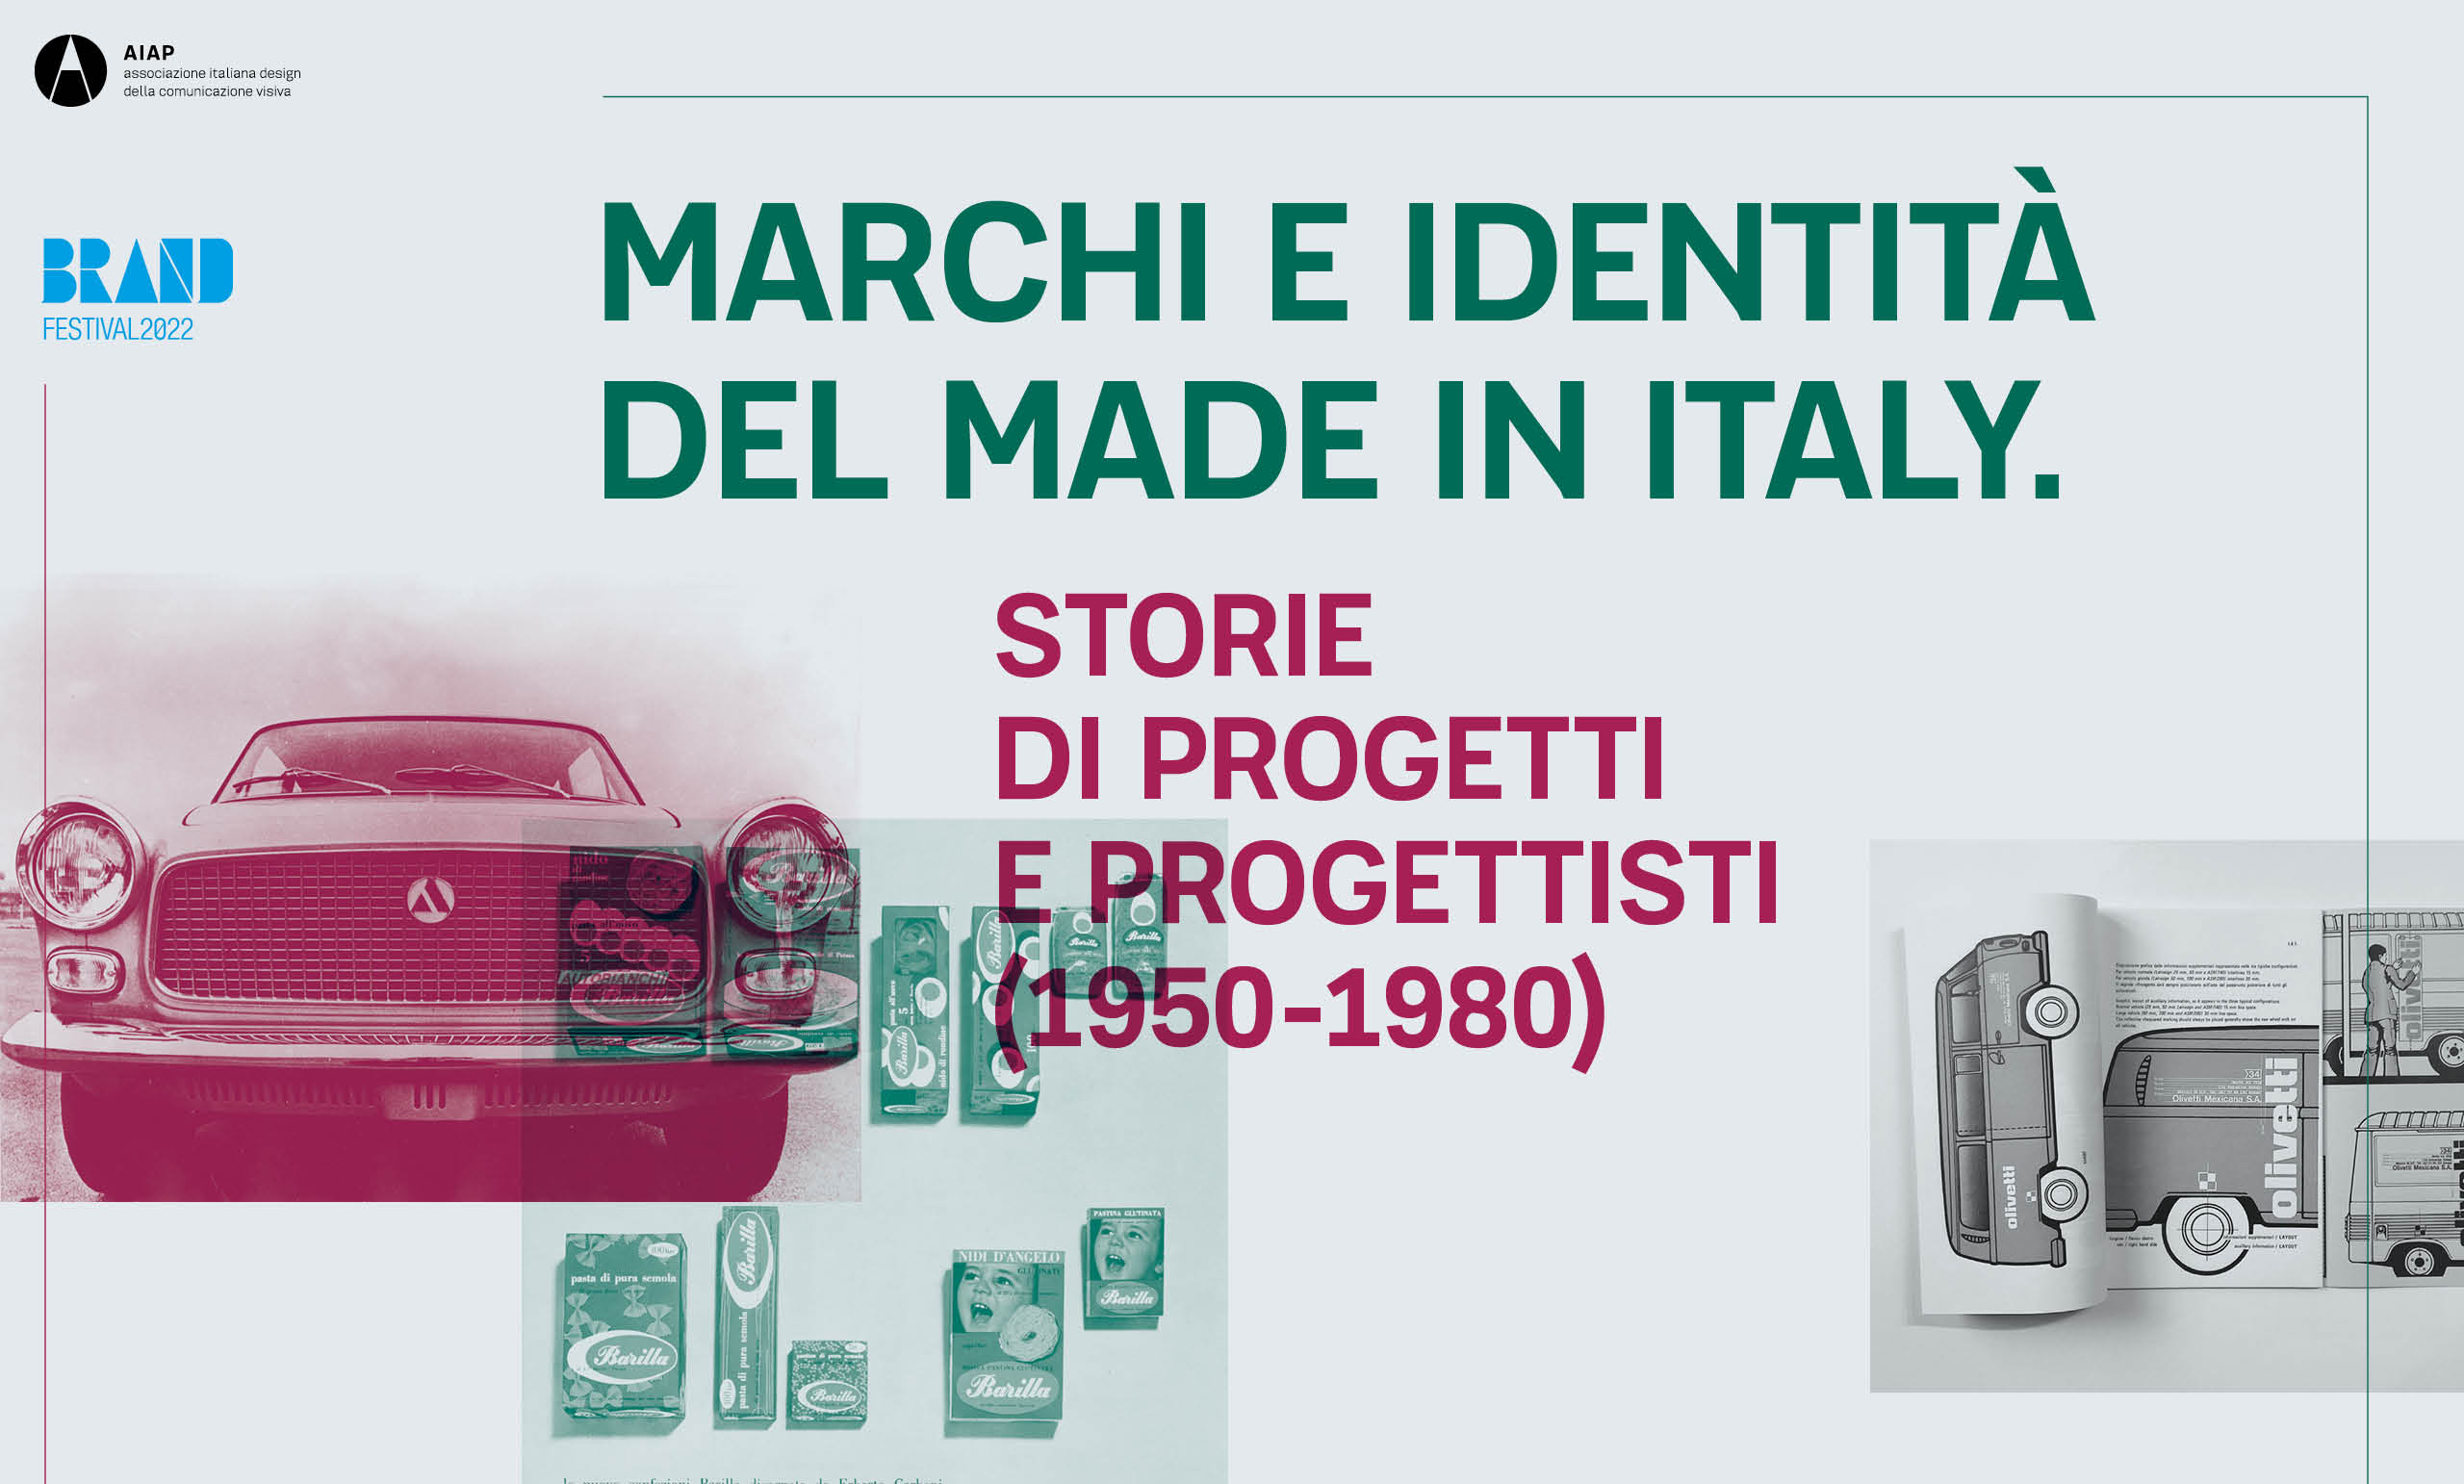 Marchi e identità del Made in Italy. Storie di progetti e progettisti (1950-1980)